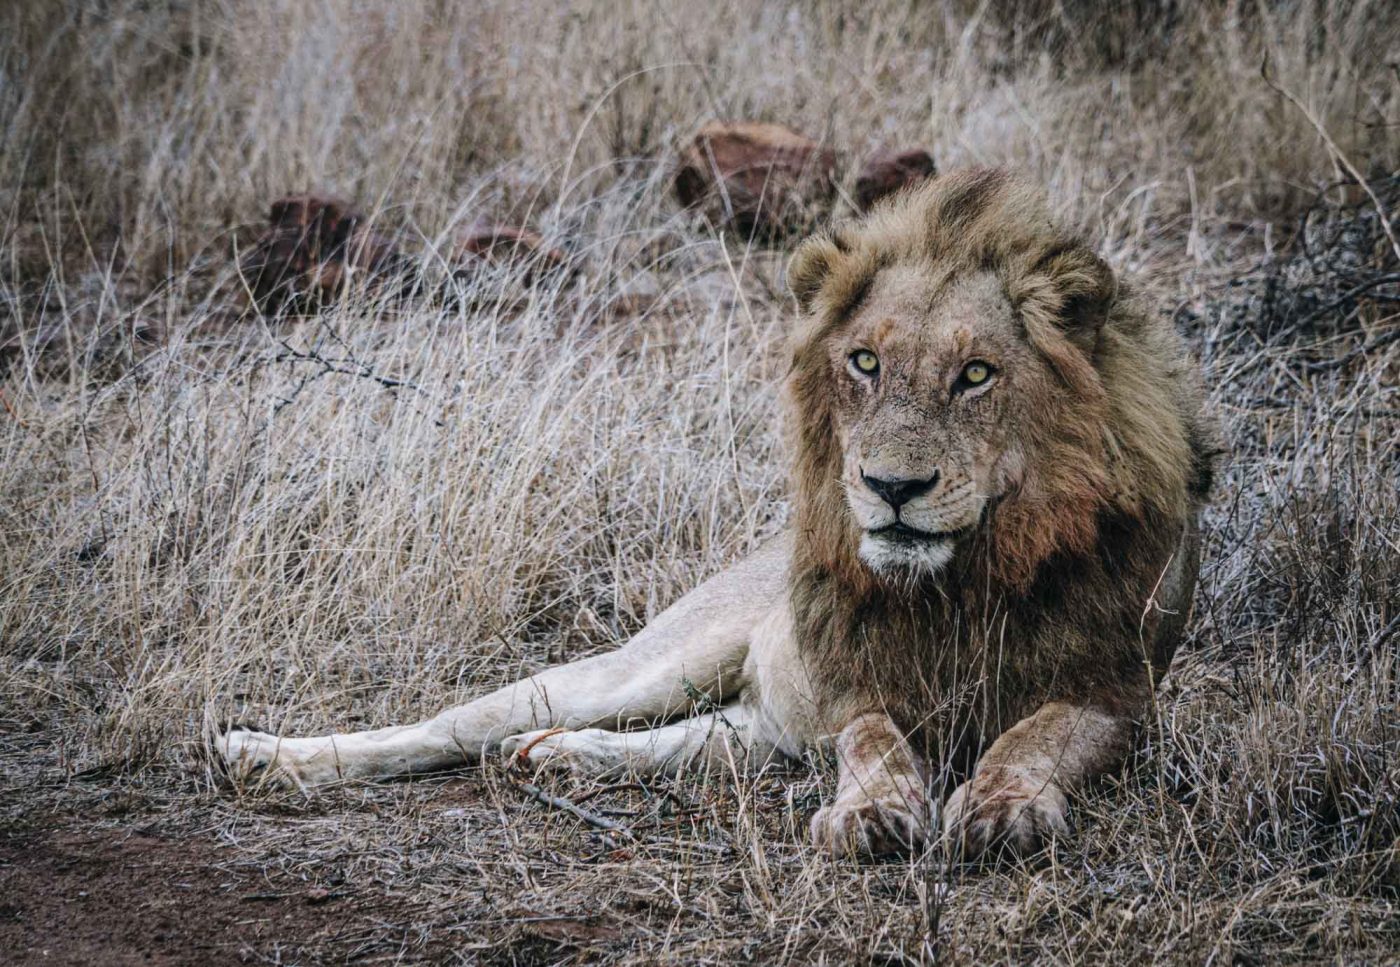 South Africa Kruger Singita safari lion 03201